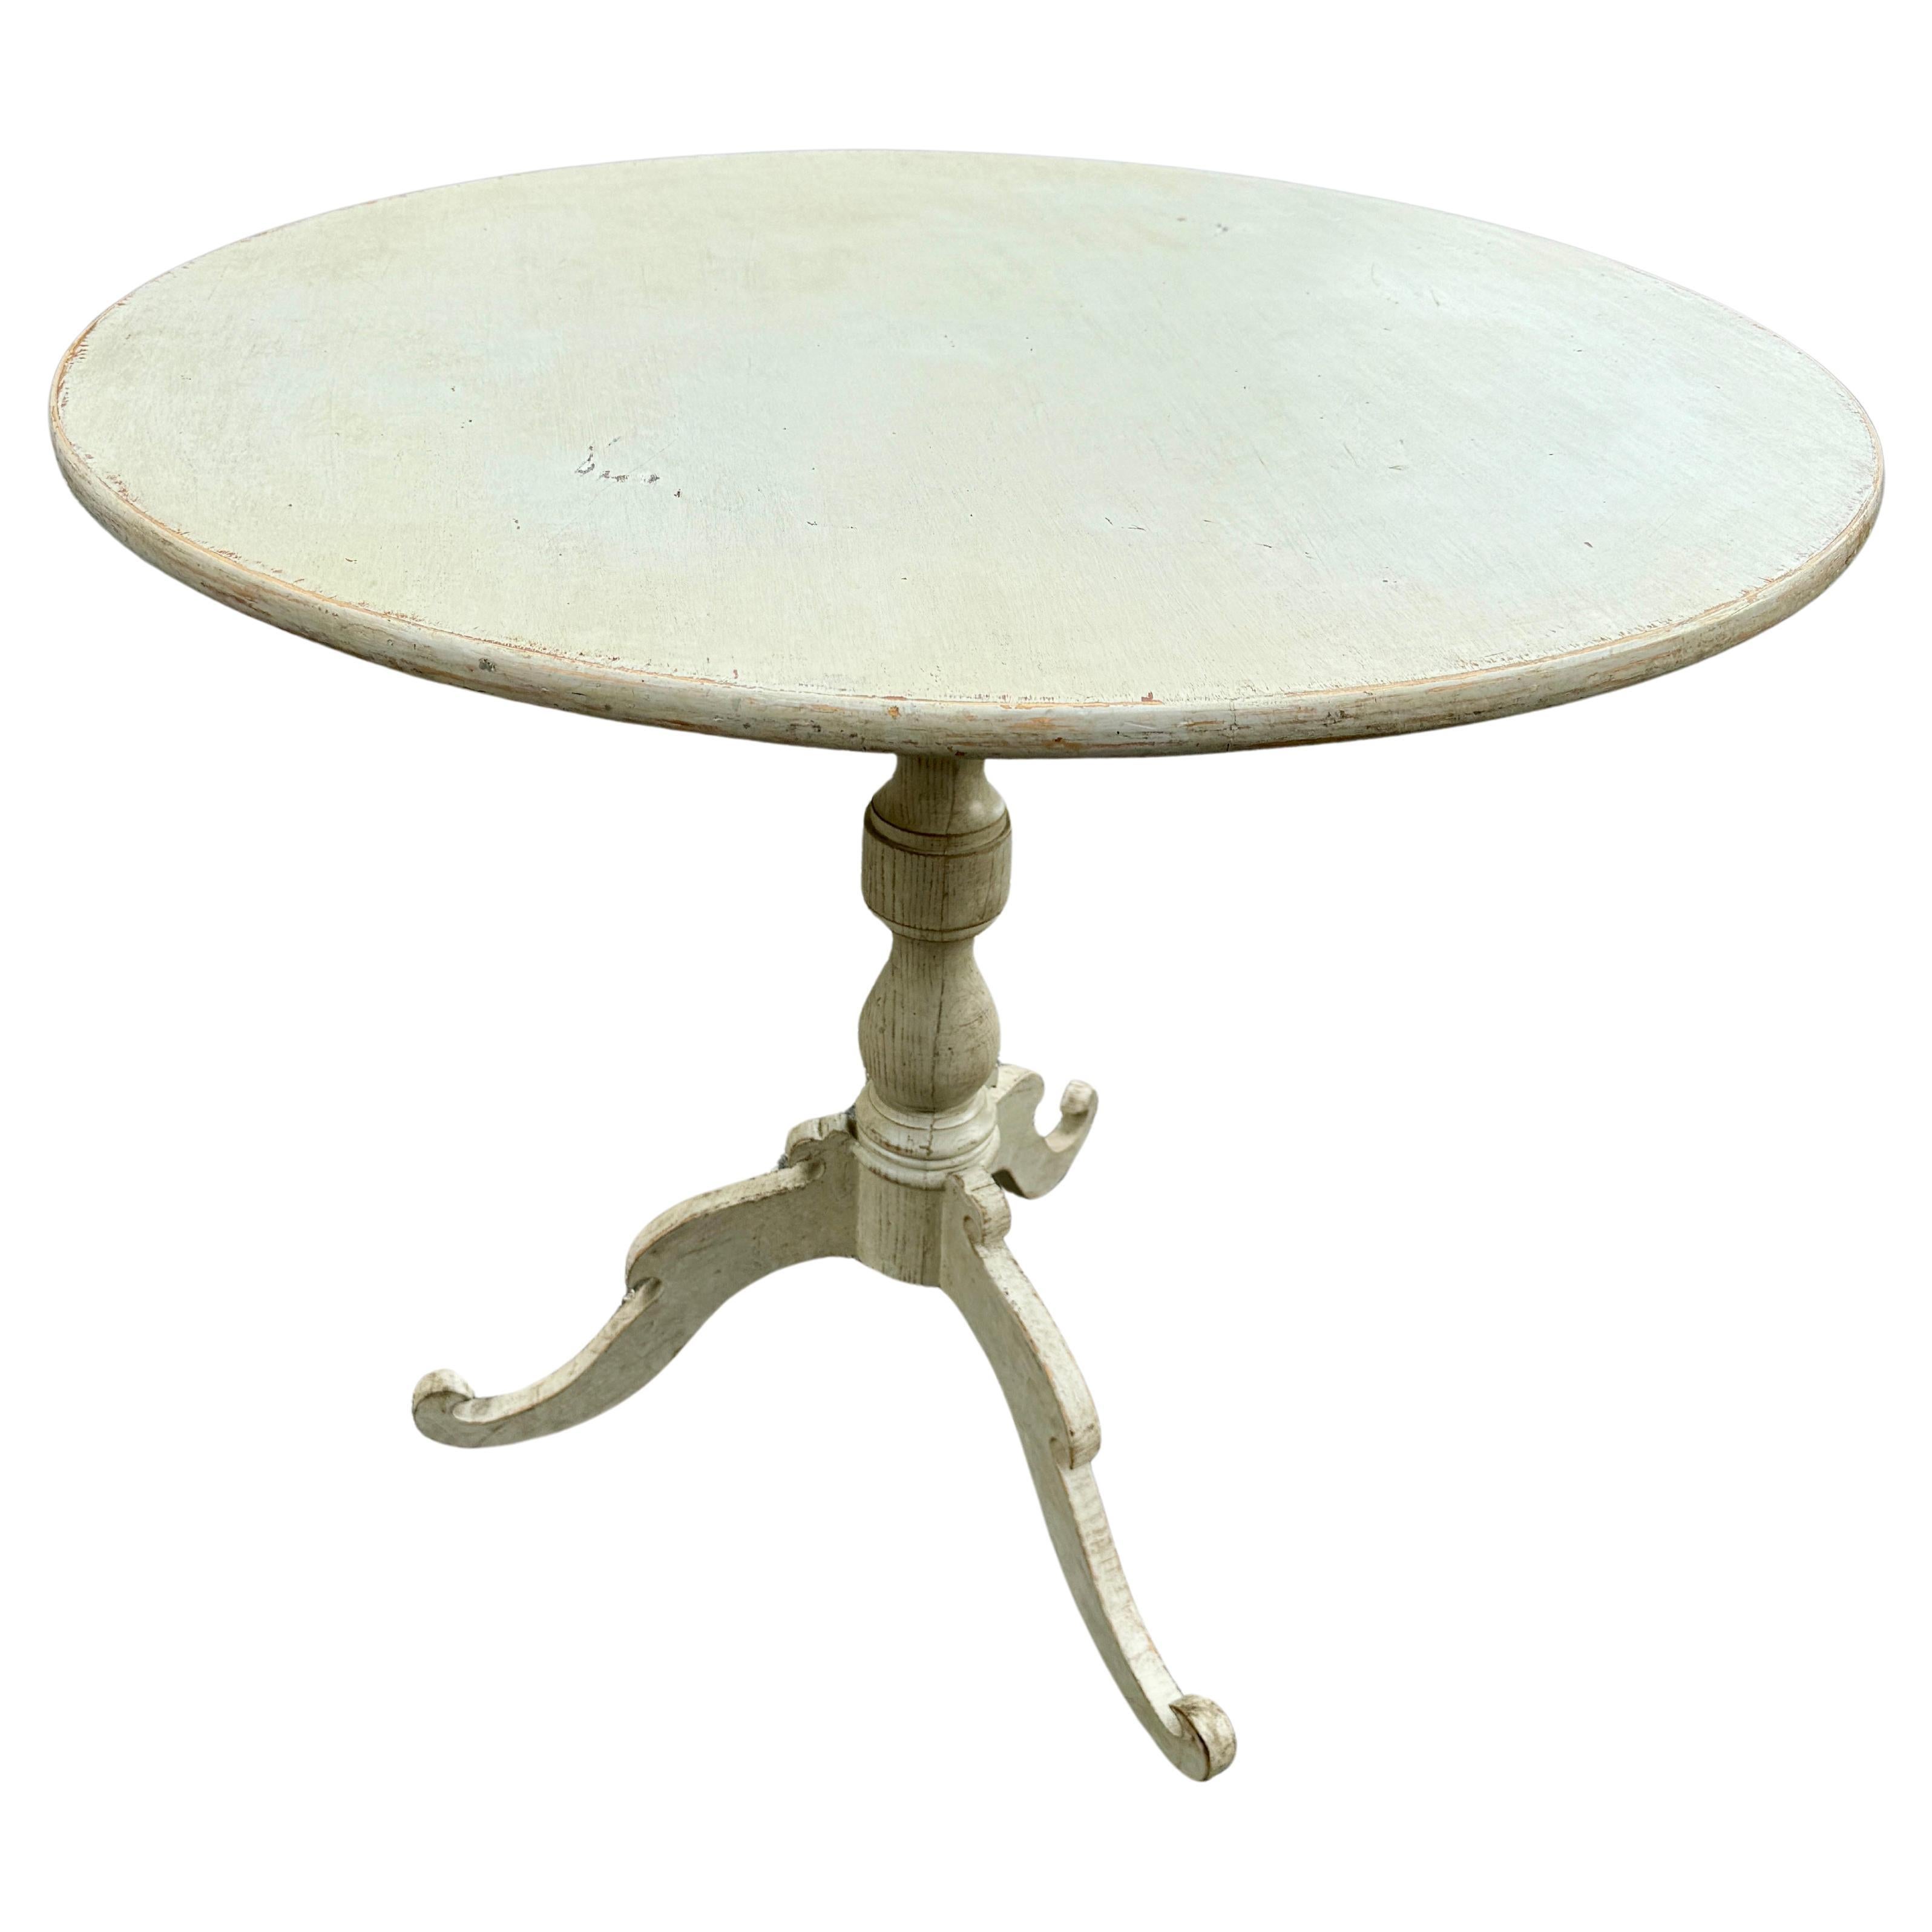 Runder Gustavianischer Tisch in der Mitte der Halle, bemalt

Dieser klassische Tisch im skandinavischen Stil ist aus Massivholz gefertigt und mit einer handgemalten Oberfläche versehen. Die Farbe dieses Stücks ist eine warme, neutrale, cremige